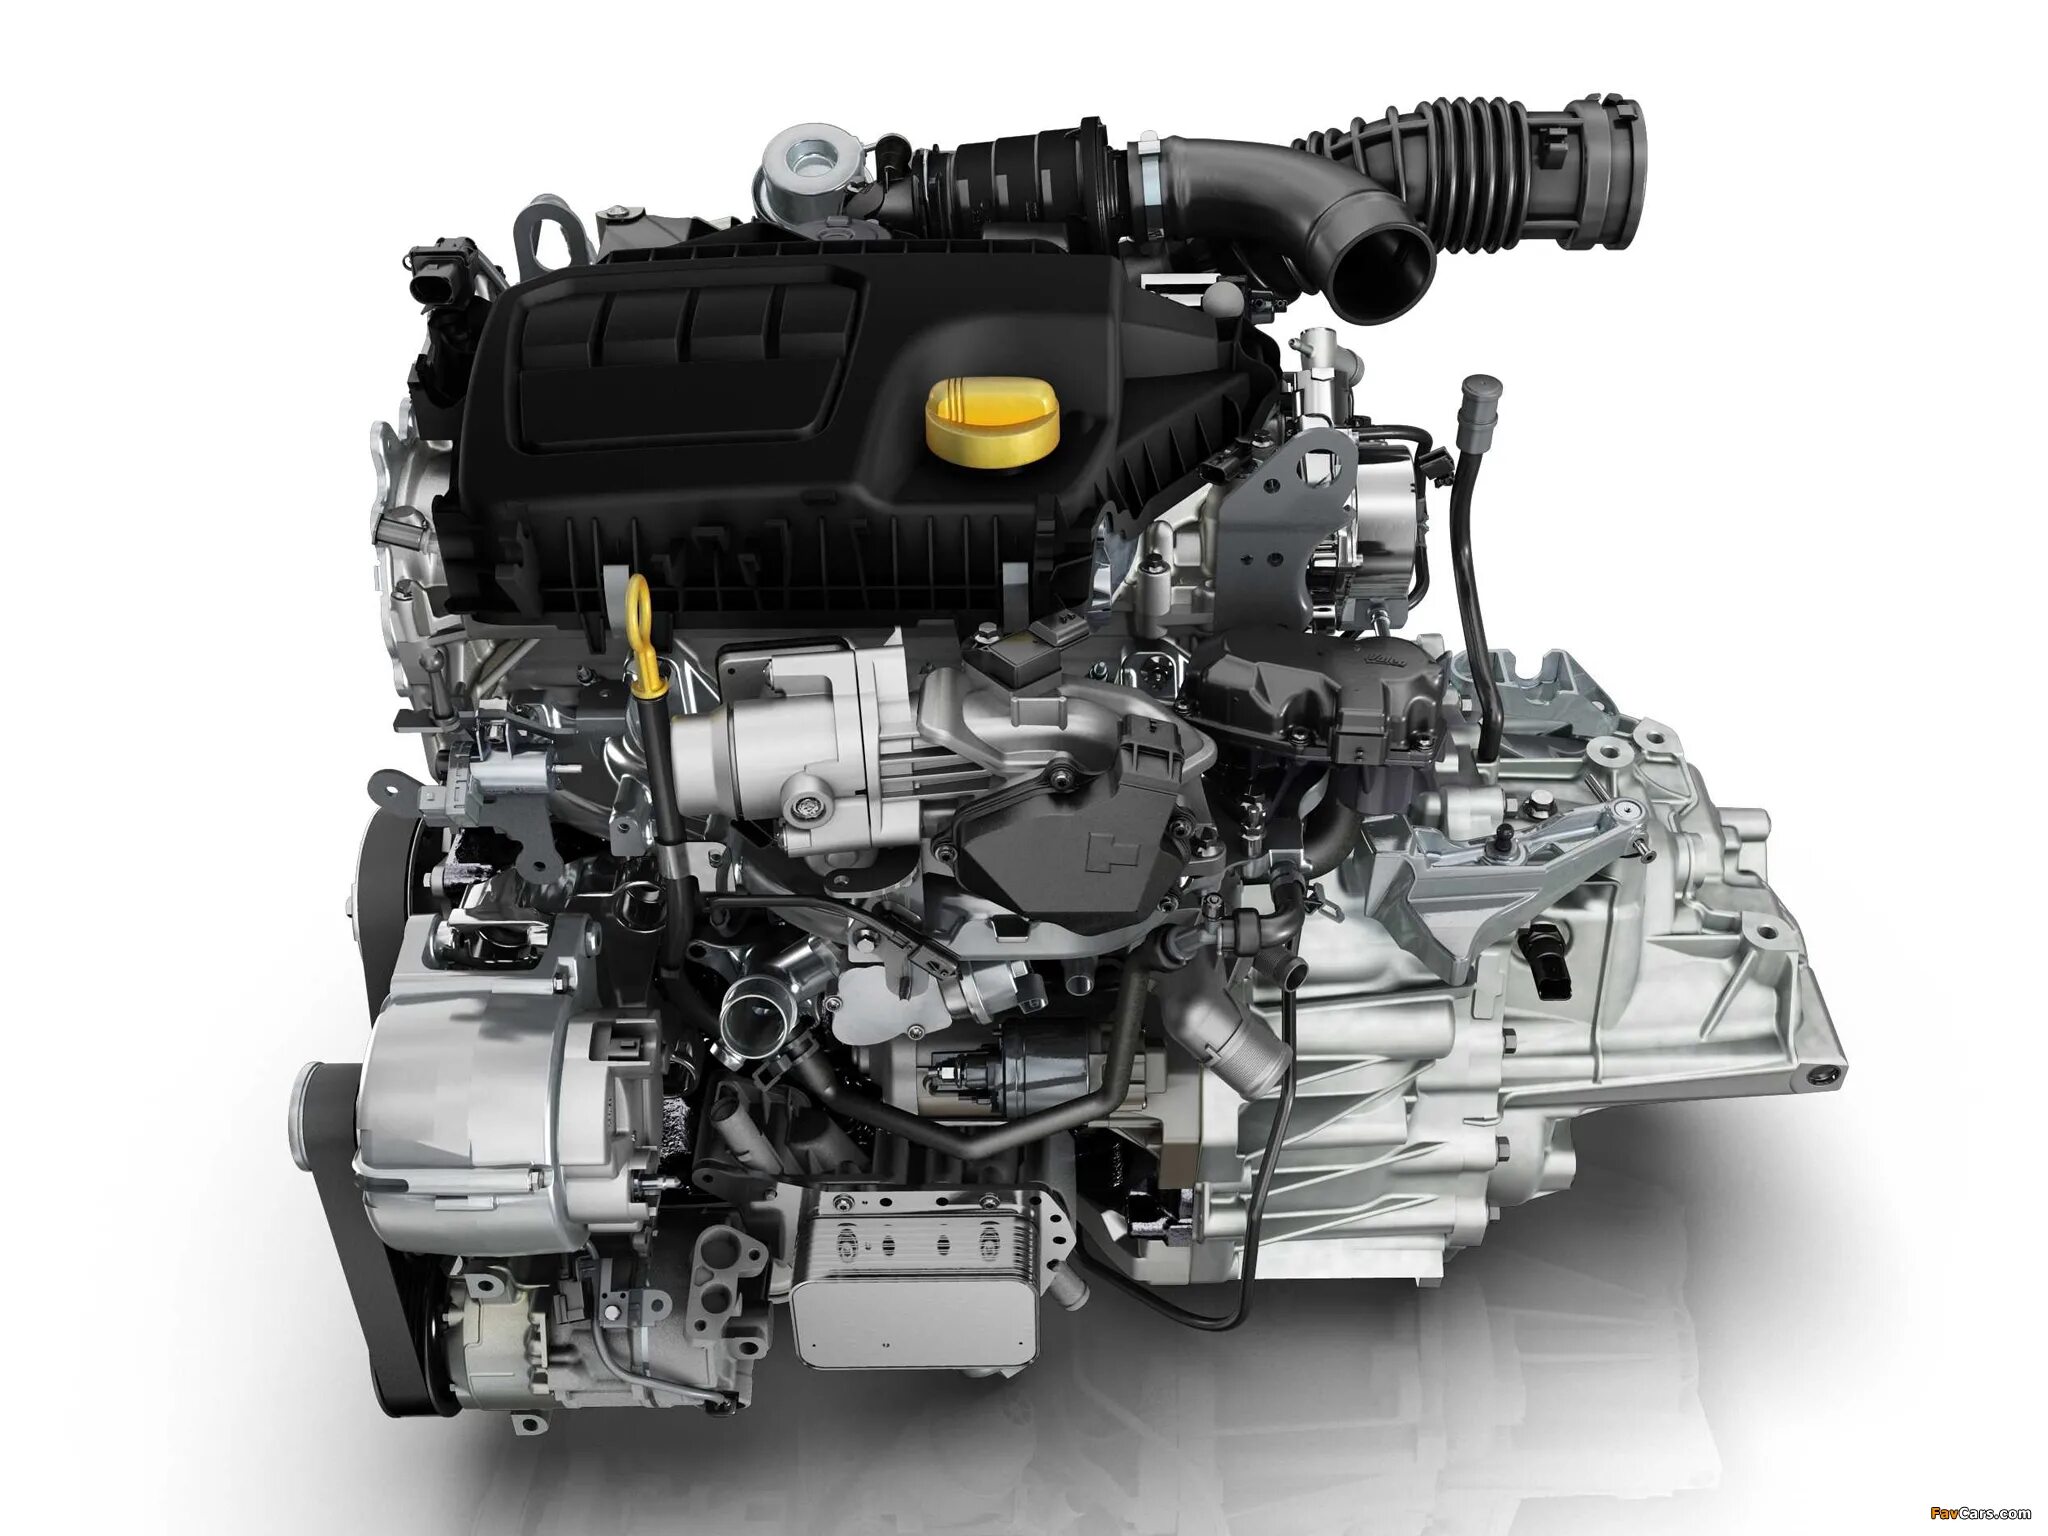 R9m 1.6 DCI 130л.с. Renault r9m 1.6 DCI. Nissan x-Trail двигатель m9r. R9m 1.6 DCI дизельный турбированный 130. Модели двигателей рено